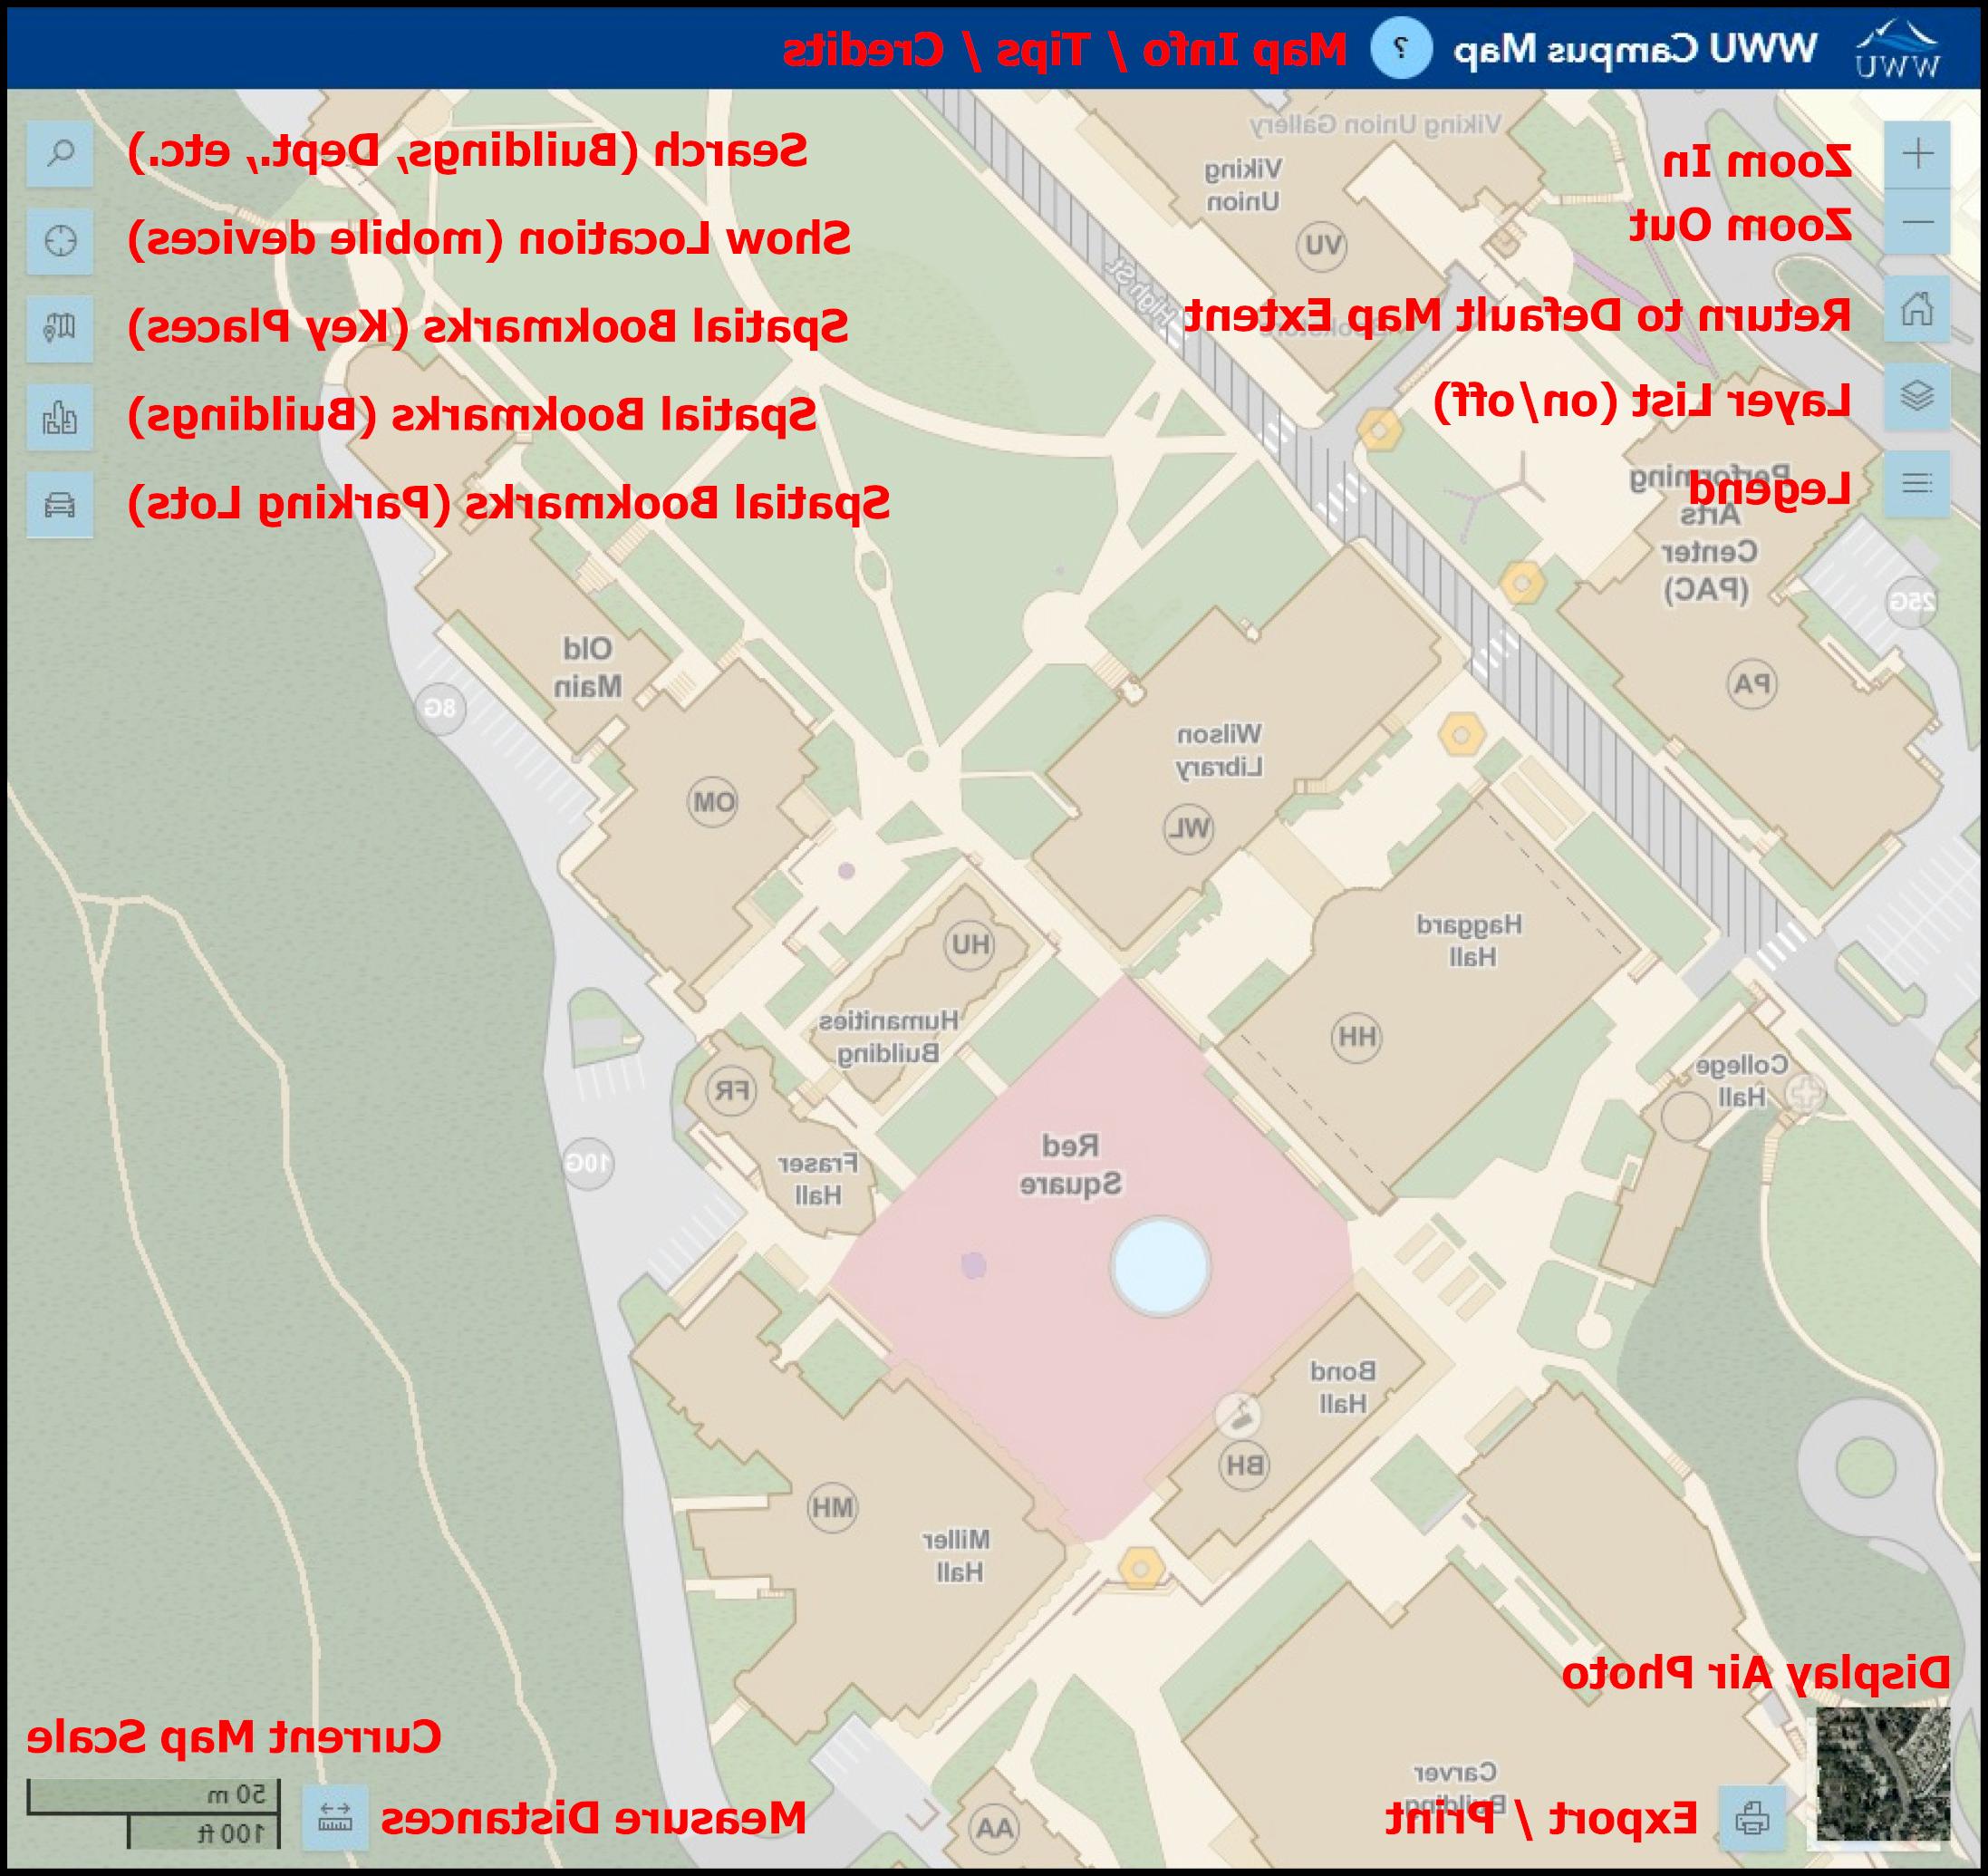 WWU校园地图用户界面的注释截图.